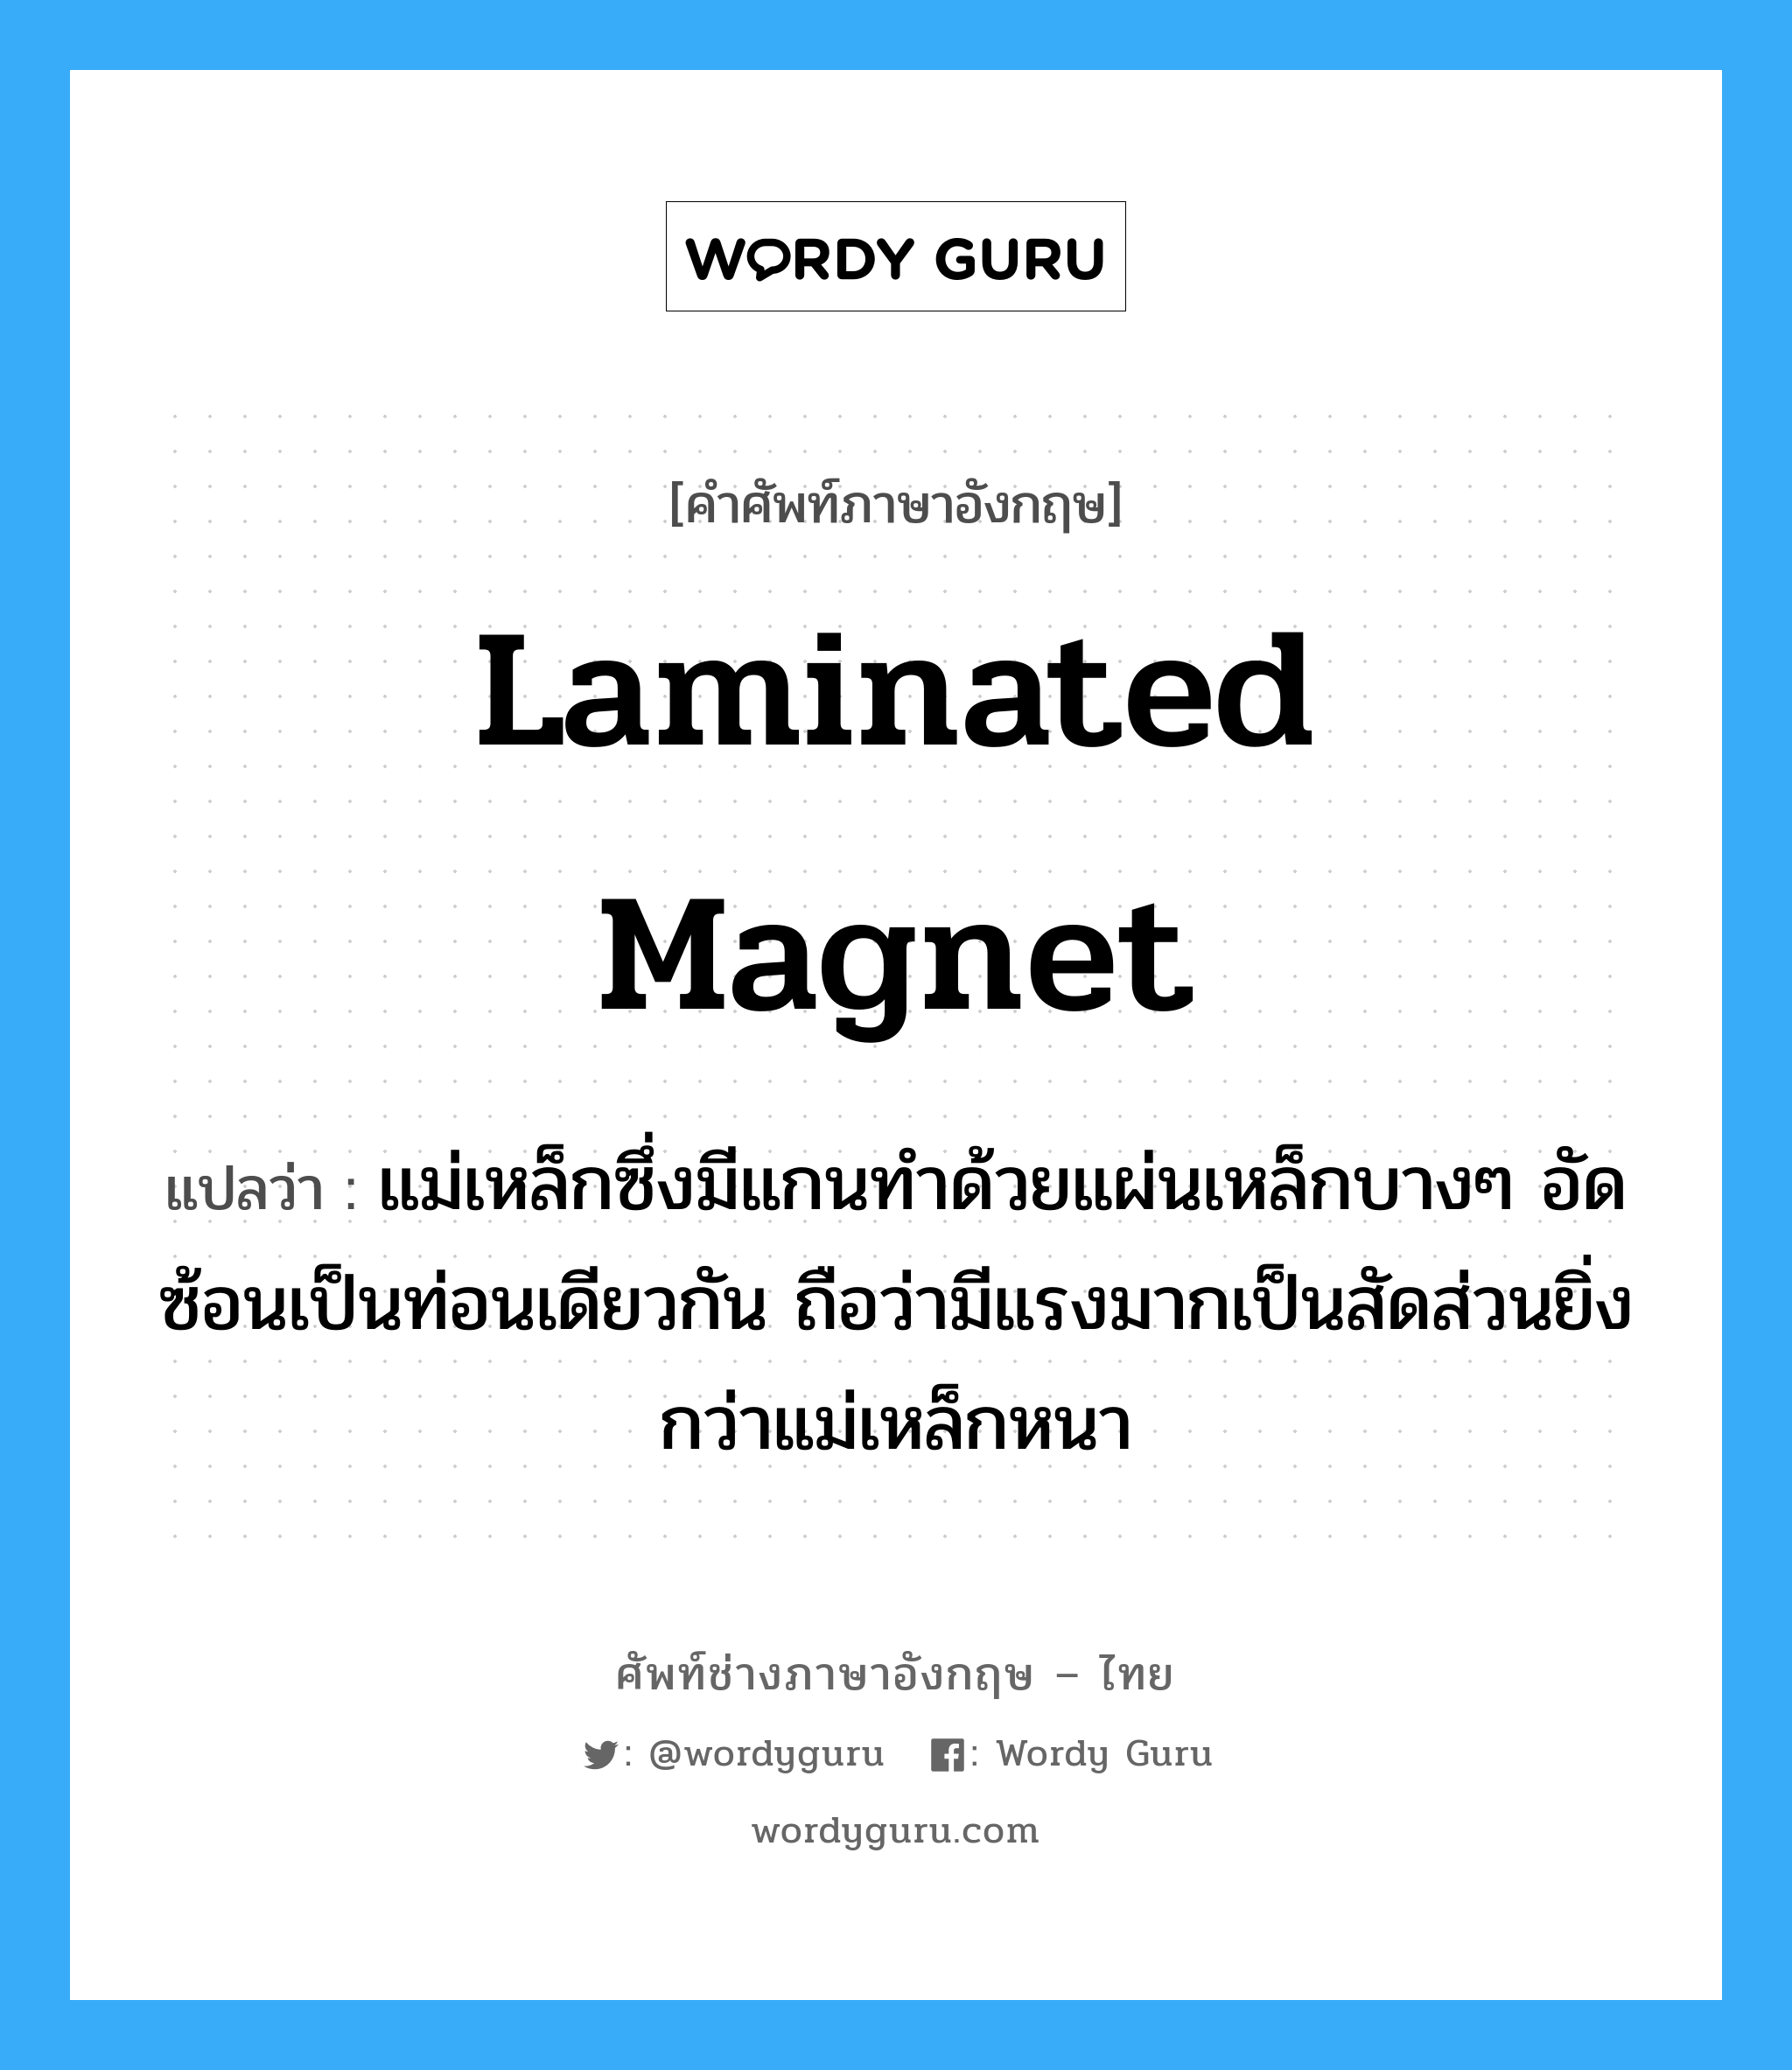 laminated magnet แปลว่า?, คำศัพท์ช่างภาษาอังกฤษ - ไทย laminated magnet คำศัพท์ภาษาอังกฤษ laminated magnet แปลว่า แม่เหล็กซึ่งมีแกนทำด้วยแผ่นเหล็กบางๆ อัดซ้อนเป็นท่อนเดียวกัน ถือว่ามีแรงมากเป็นสัดส่วนยิ่งกว่าแม่เหล็กหนา